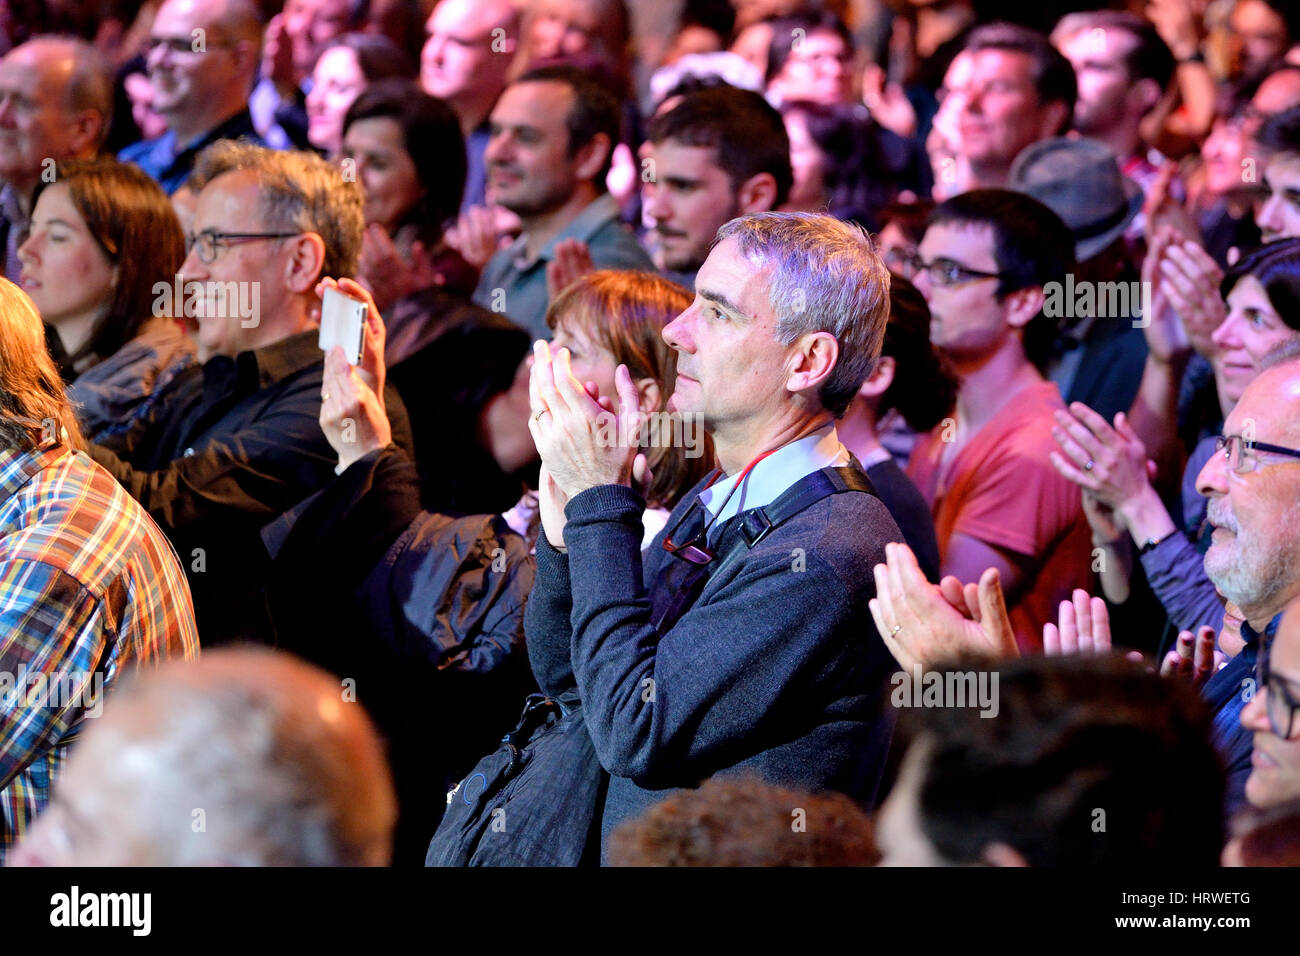 Barcelone - APR 16 : foule dans un concert à Luz de Gas club le 16 avril 2015 à Barcelone, Espagne. Banque D'Images